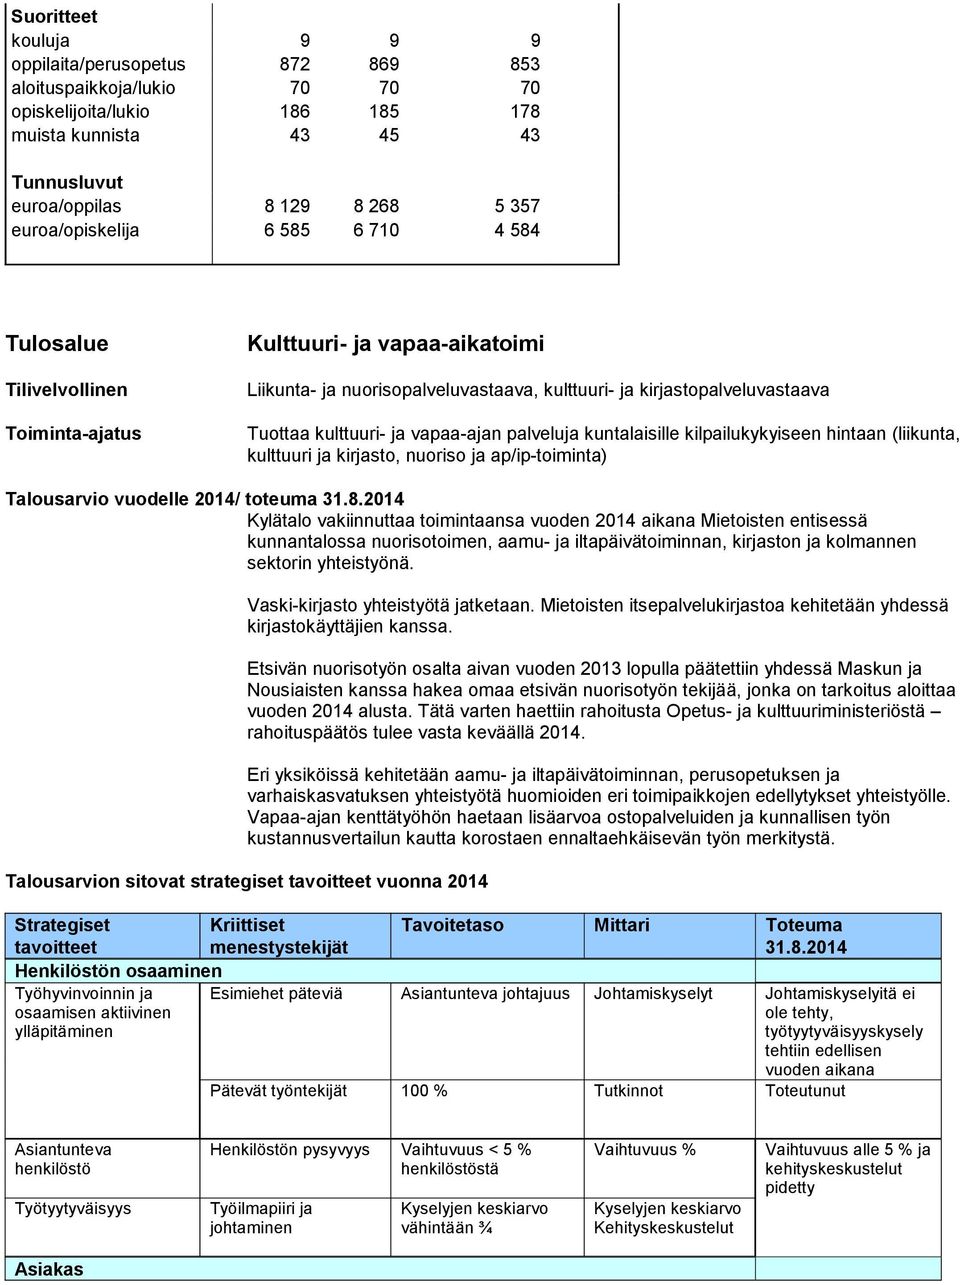 kulttuuri- ja vapaa-ajan palveluja kuntalaisille kilpailukykyiseen hintaan (liikunta, kulttuuri ja kirjasto, nuoriso ja ap/ip-toiminta) arvio vuodelle 2014/ toteuma 31.8.